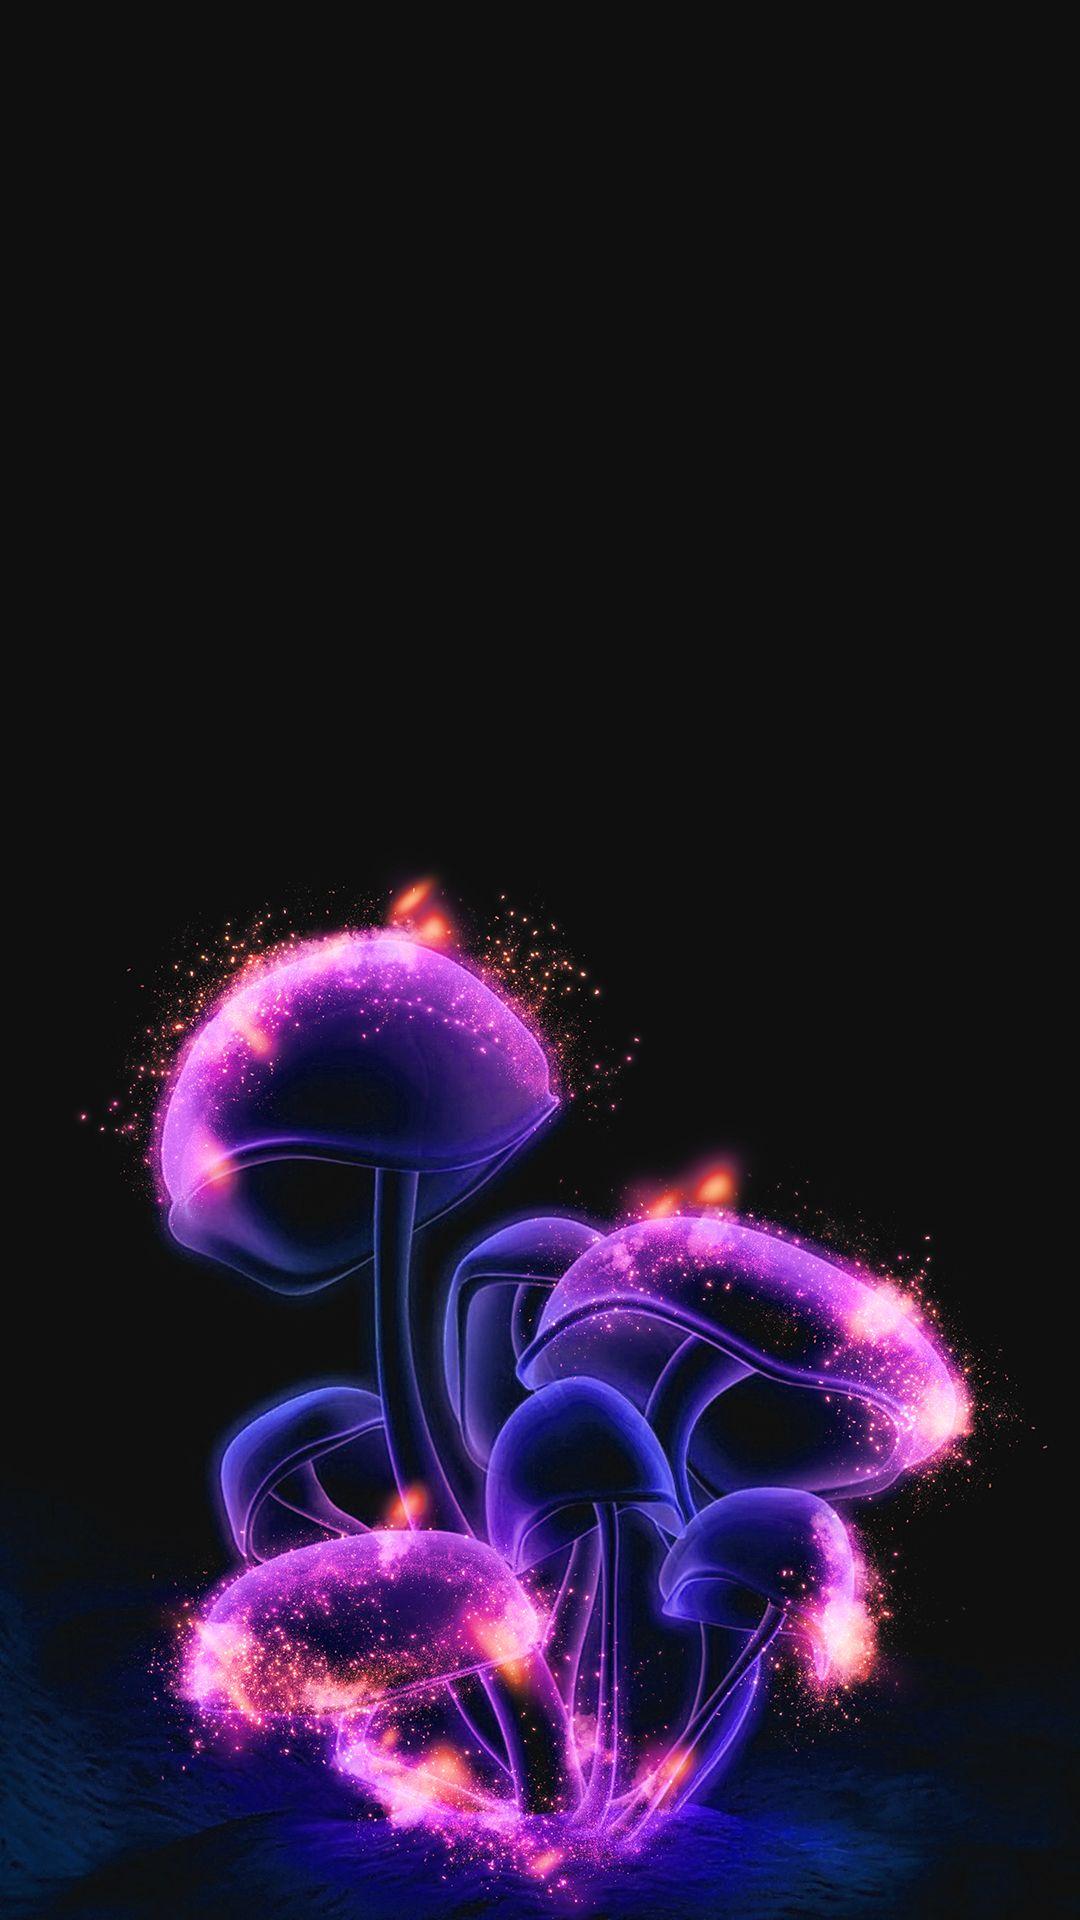 Free HD Magic Mushrooms Phone Wallpaper.5477